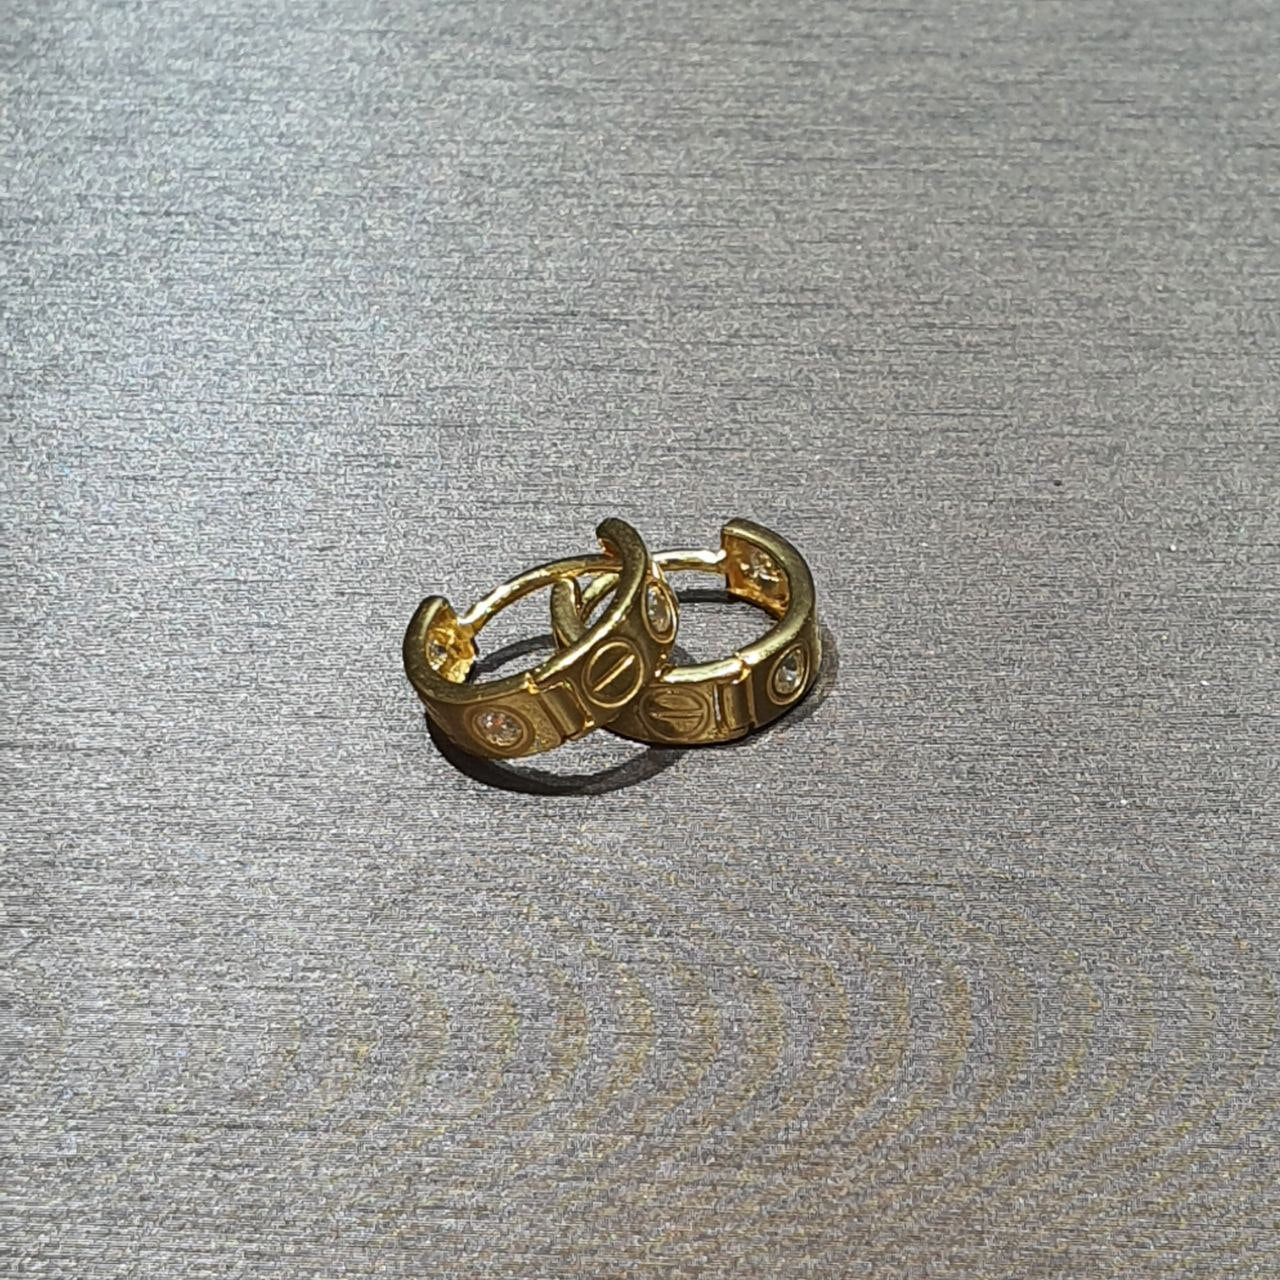 22k / 916 Gold C design Loop Earring-916 gold-Best Gold Shop